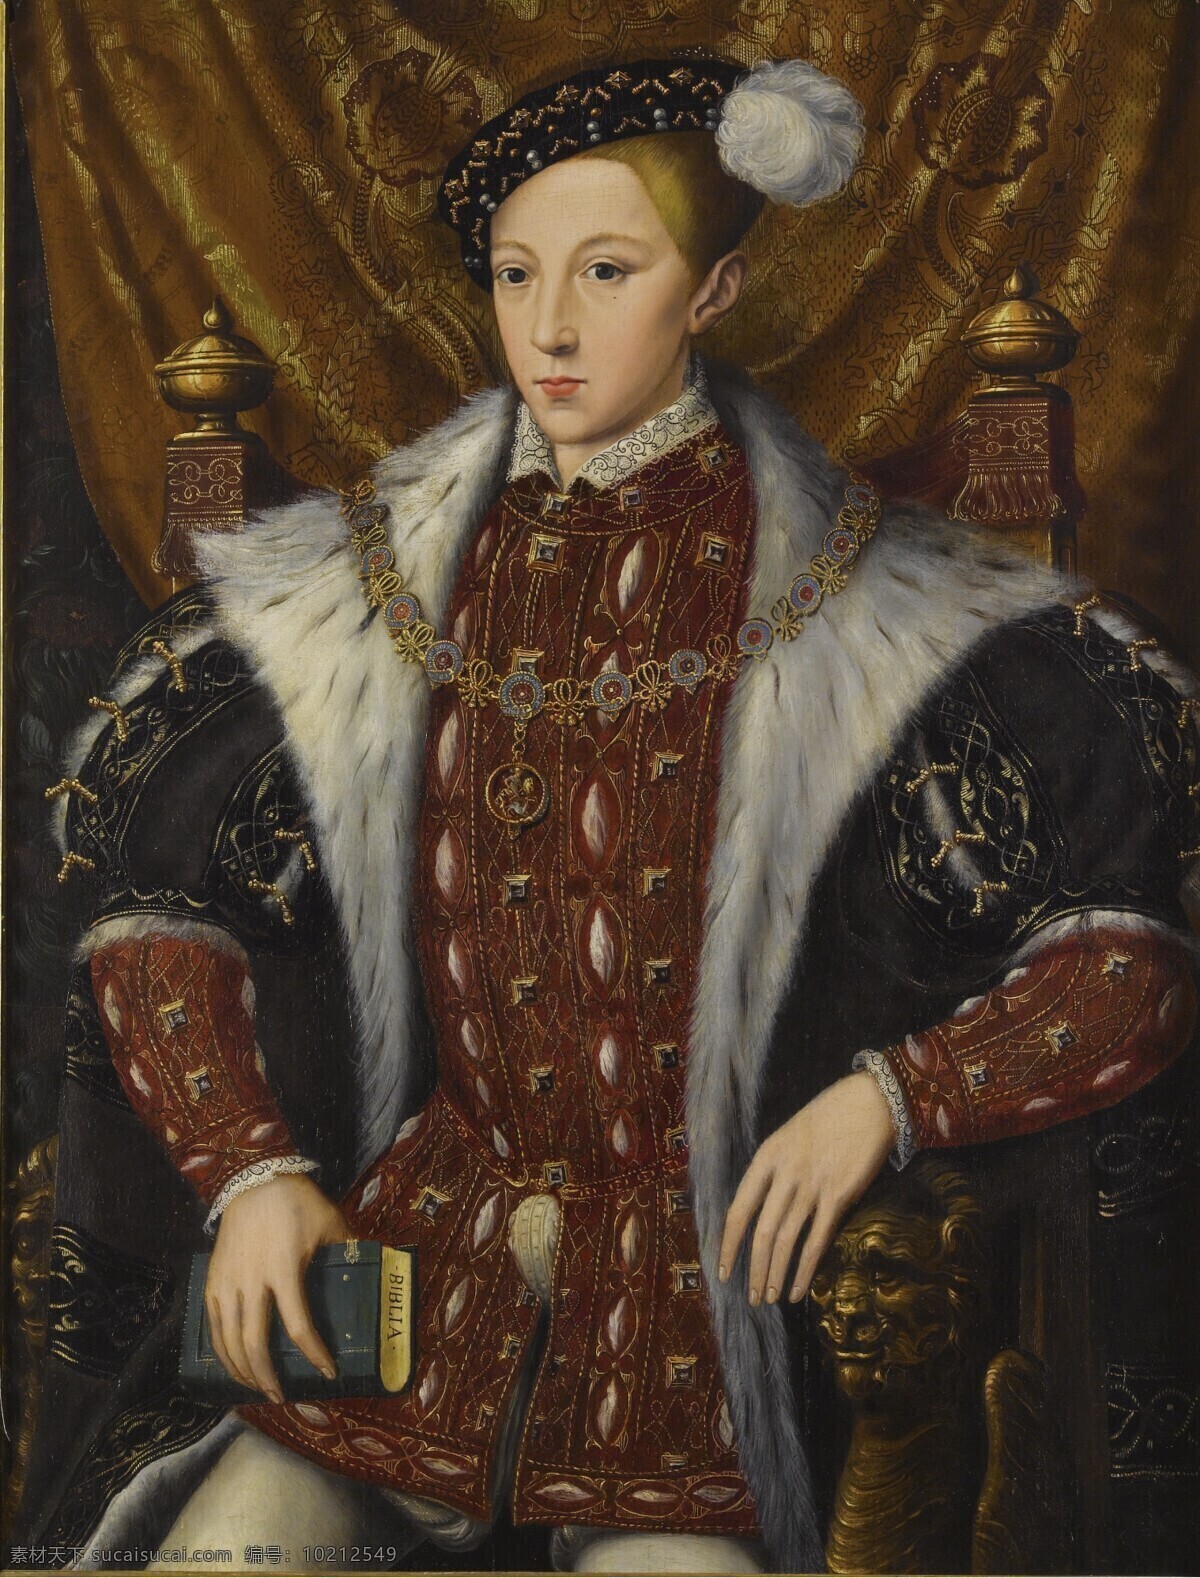 古典油画 绘画书法 文化艺术 油画 英格兰 爱德华 六世 设计素材 模板下载 英国国王 亨利八世独子 珍摩西王后 都铎王朝 装饰素材